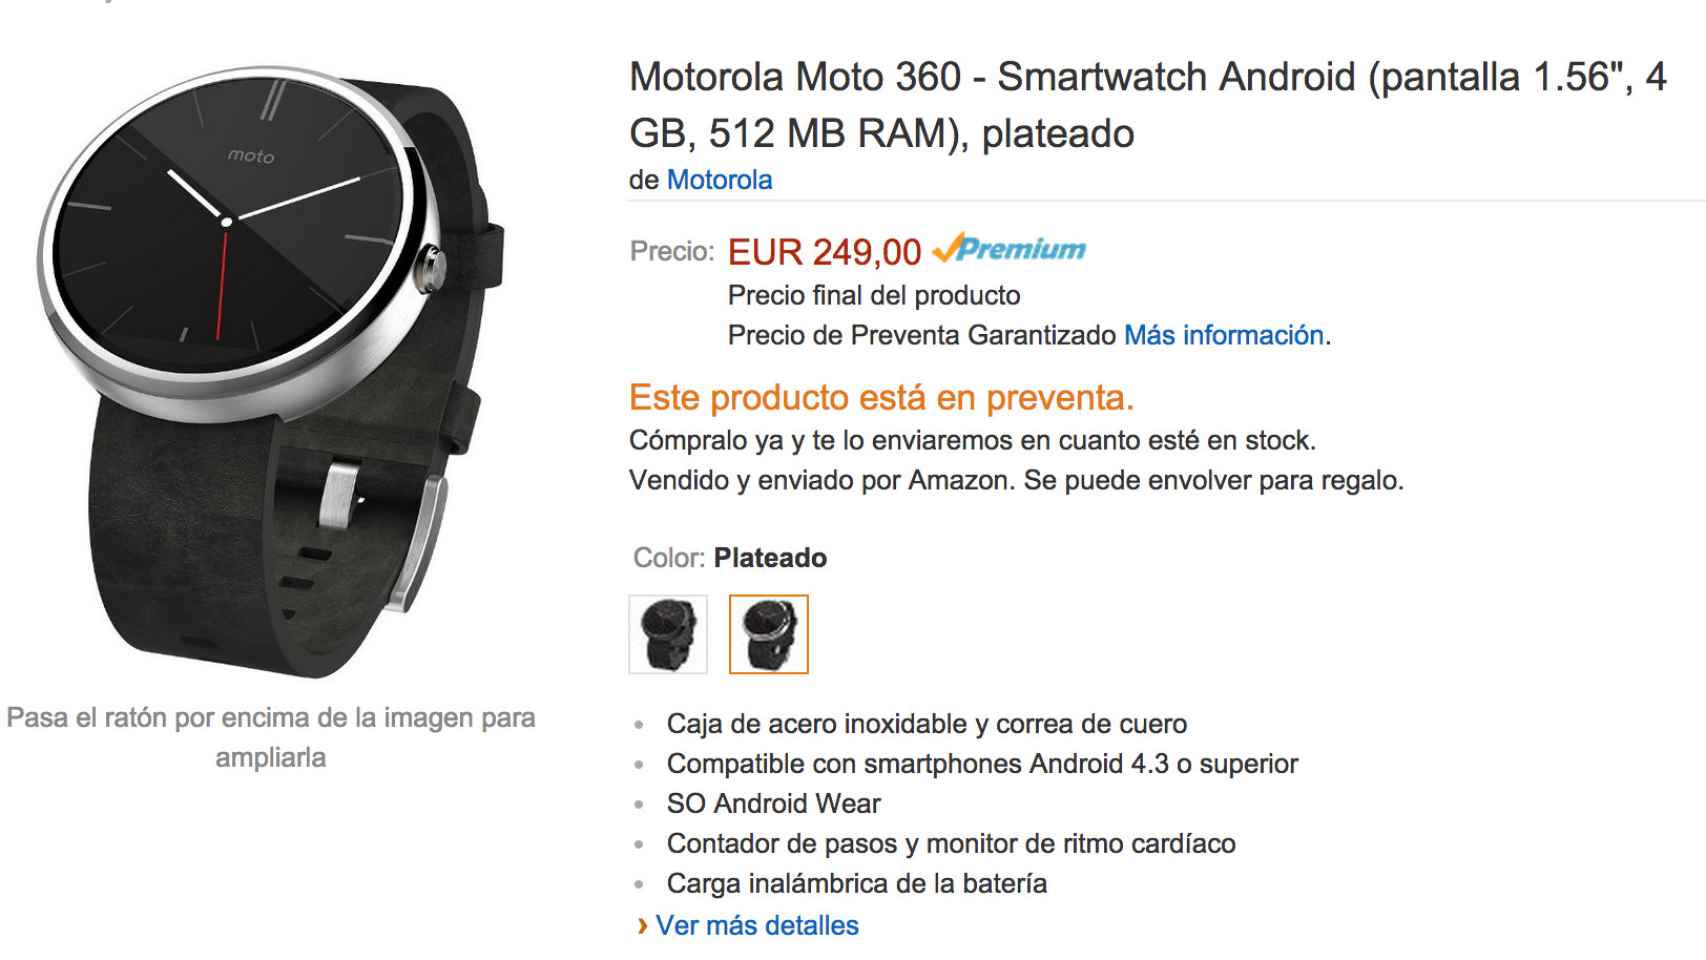 Motorola Moto 360, ya disponible para comprar en pre-reserva